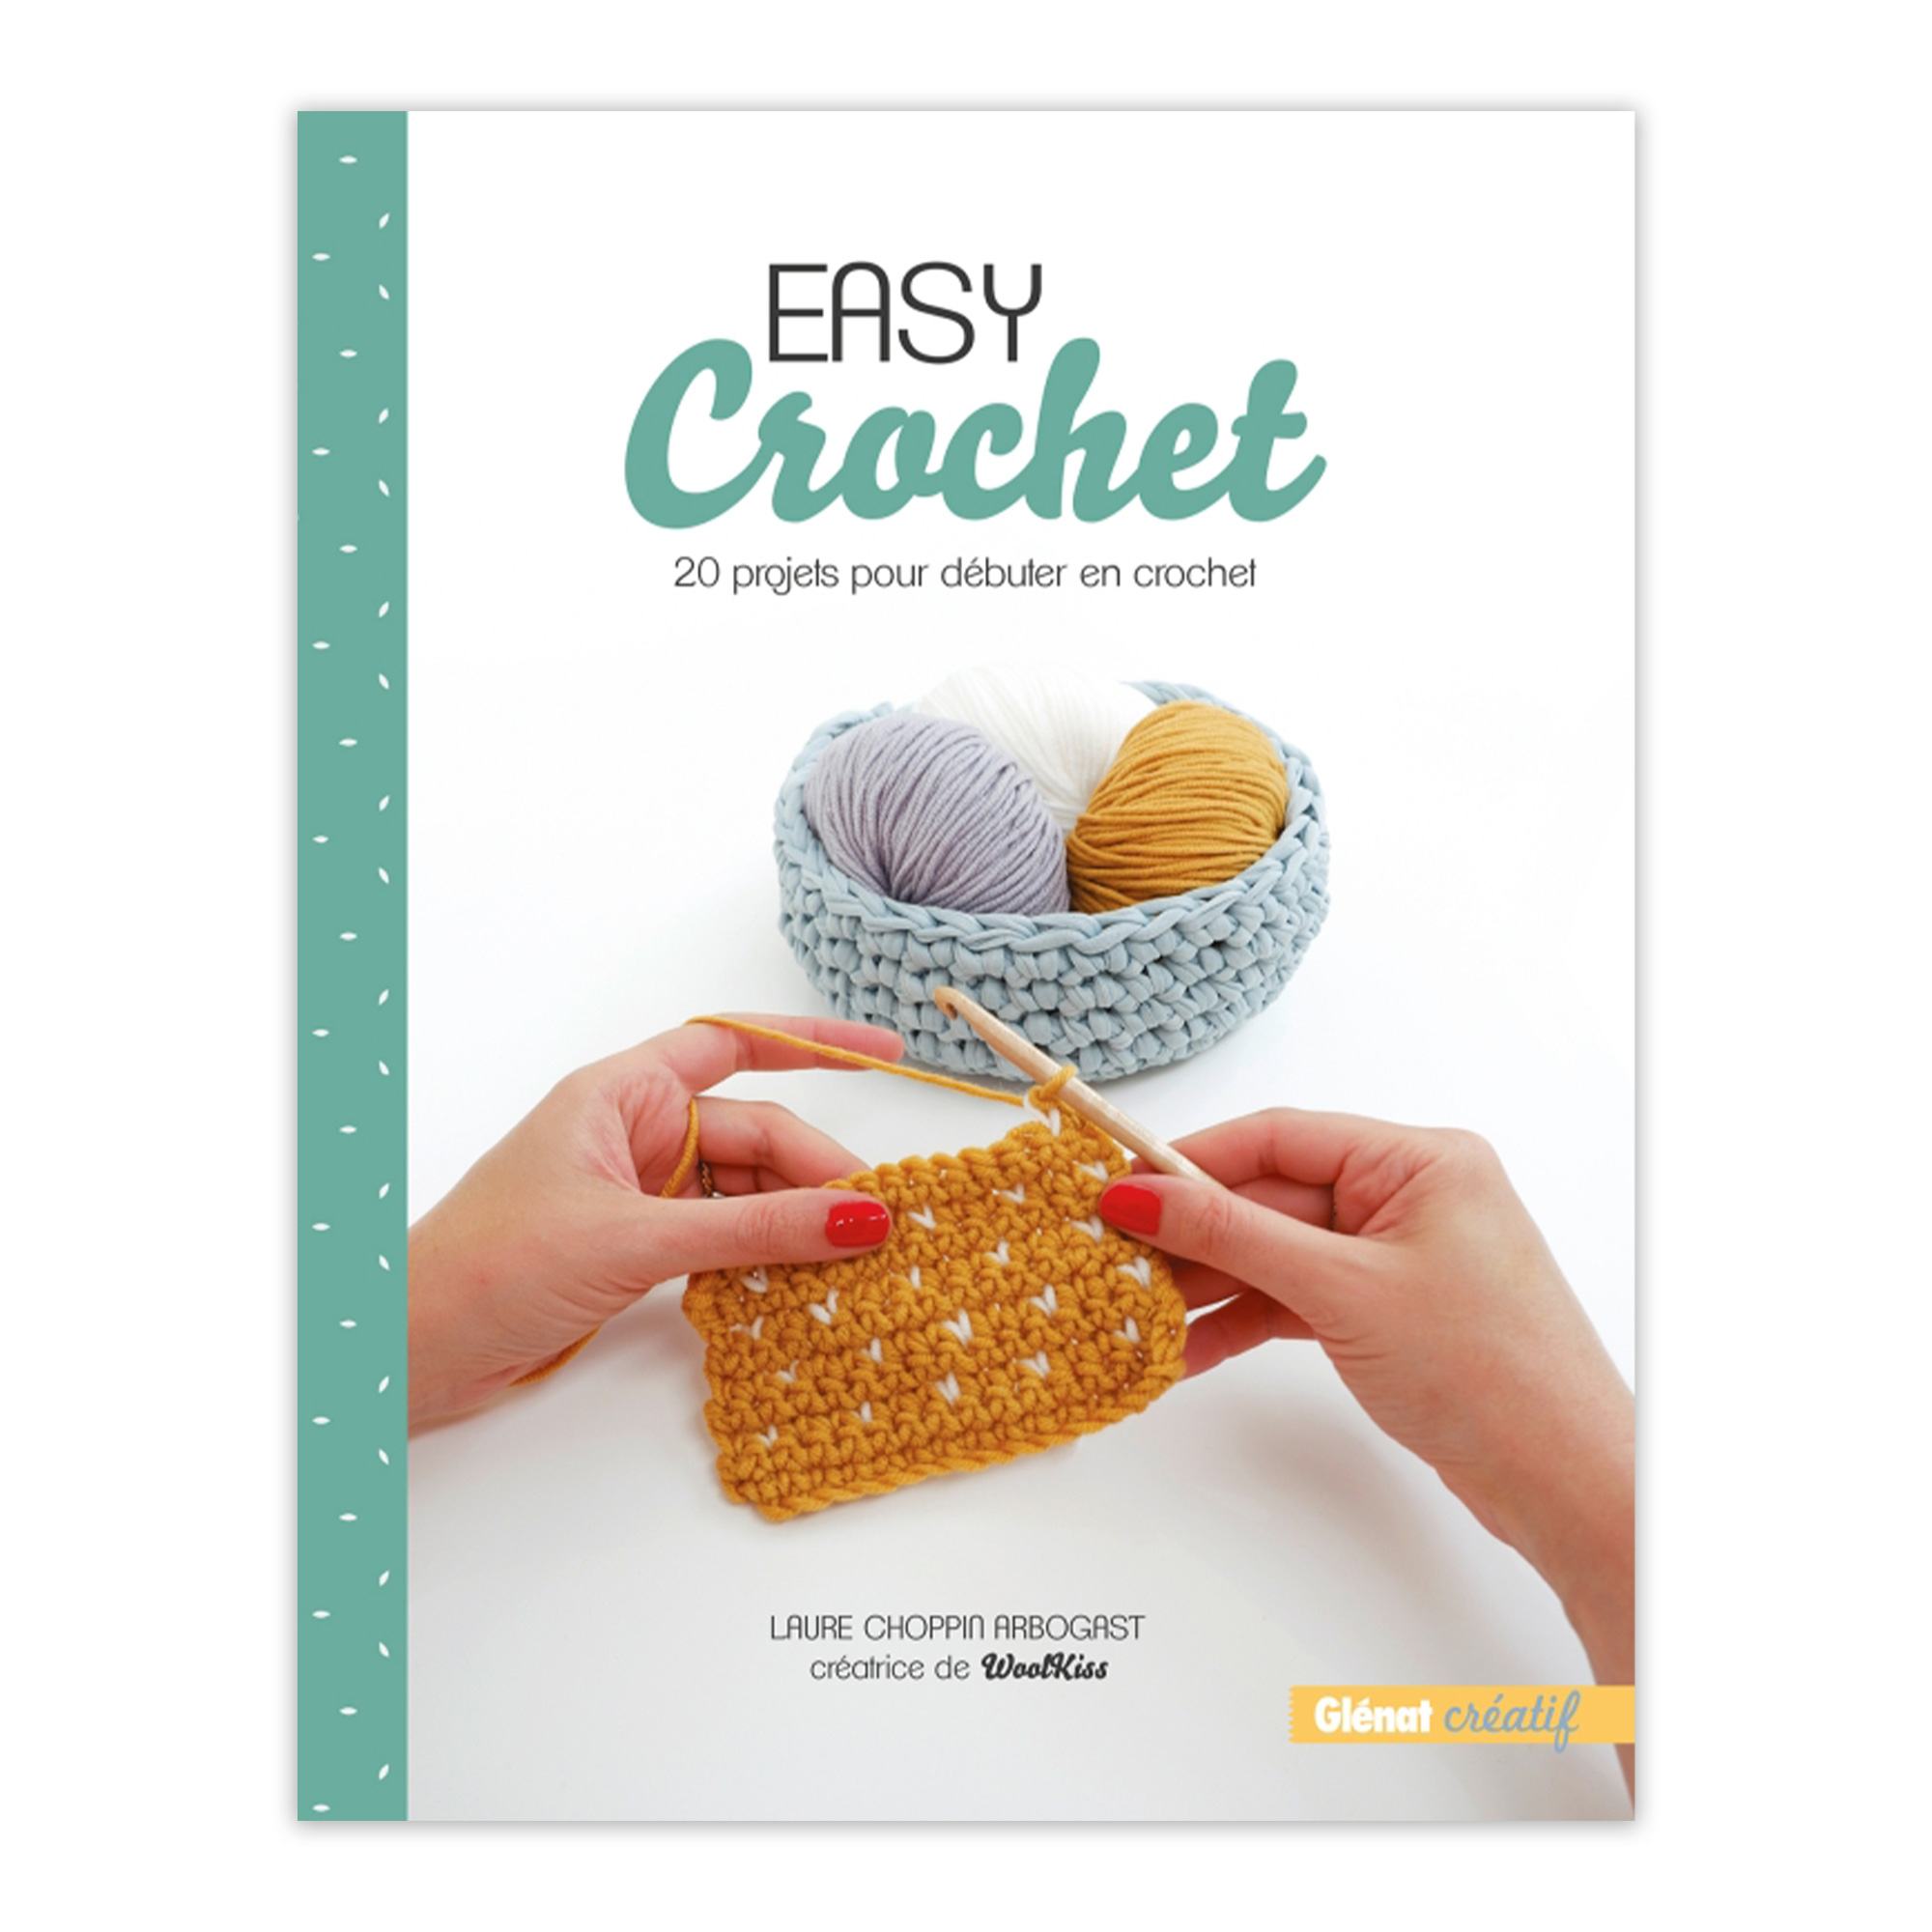 Livre Le crochet facile / 20 créations contemporaines, livre de